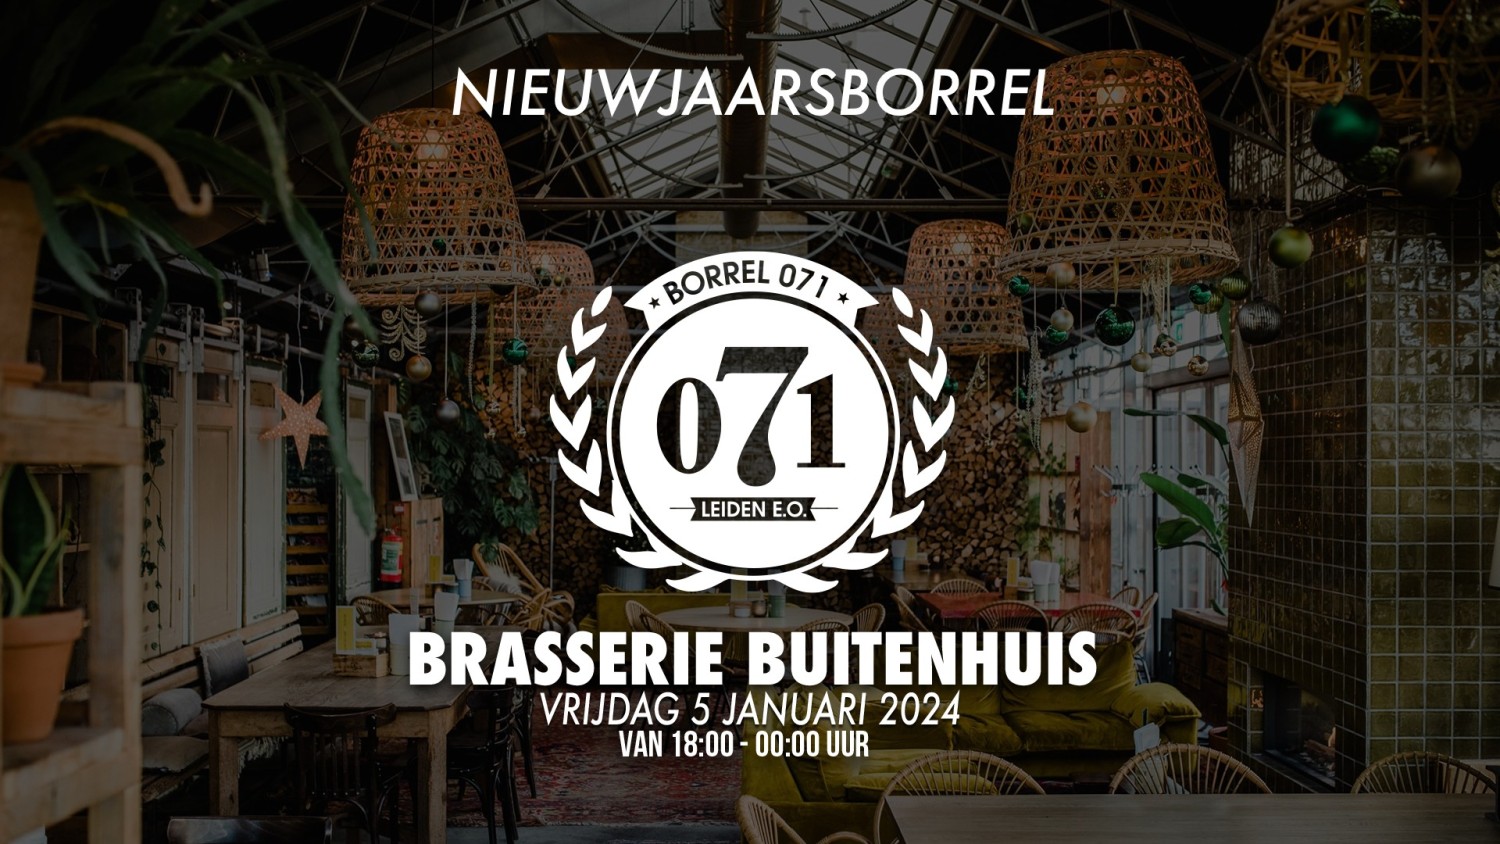 Party nieuws: Nieuwjaars Borrel071 in Brasserie Buitenhuis Valkenburg